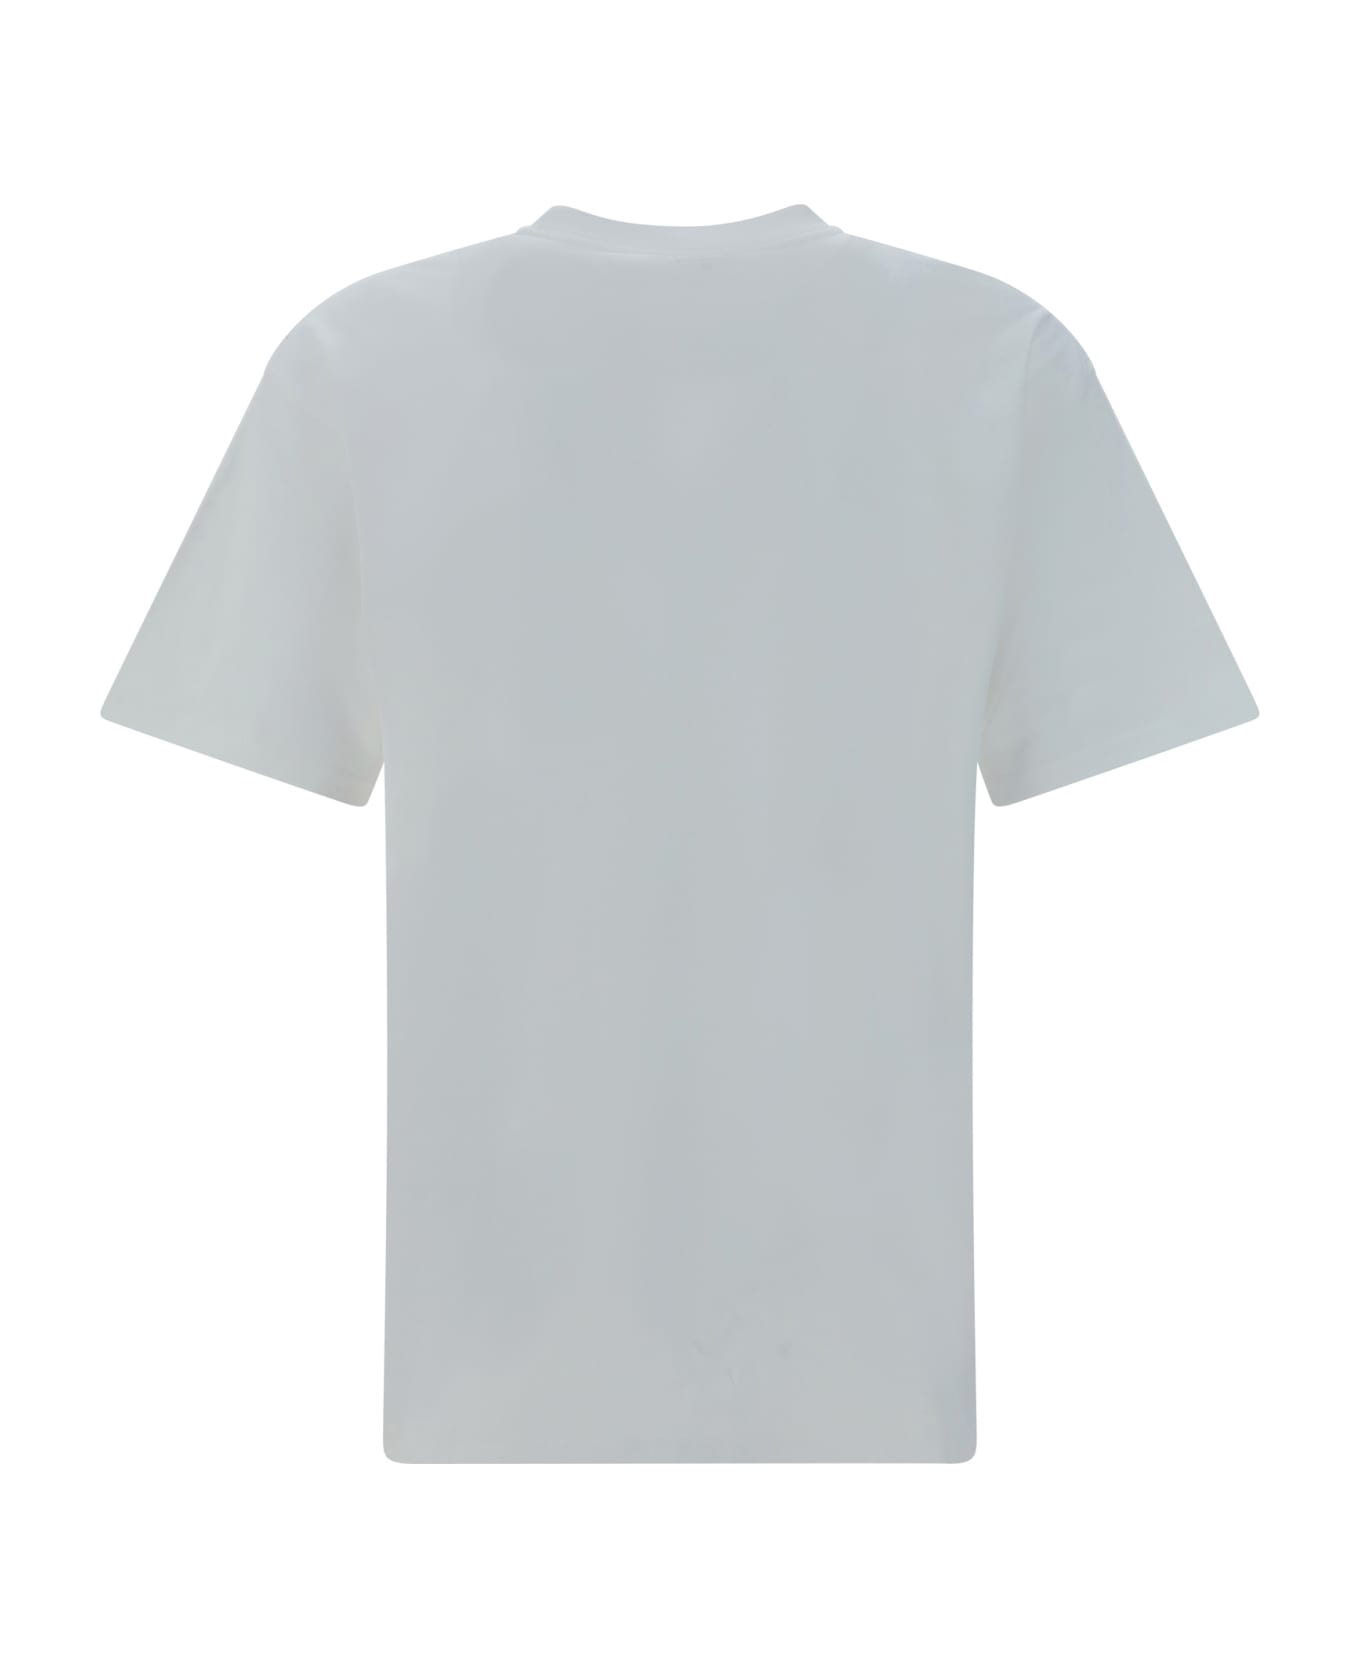 Carhartt S/s Drip T-shirt - White